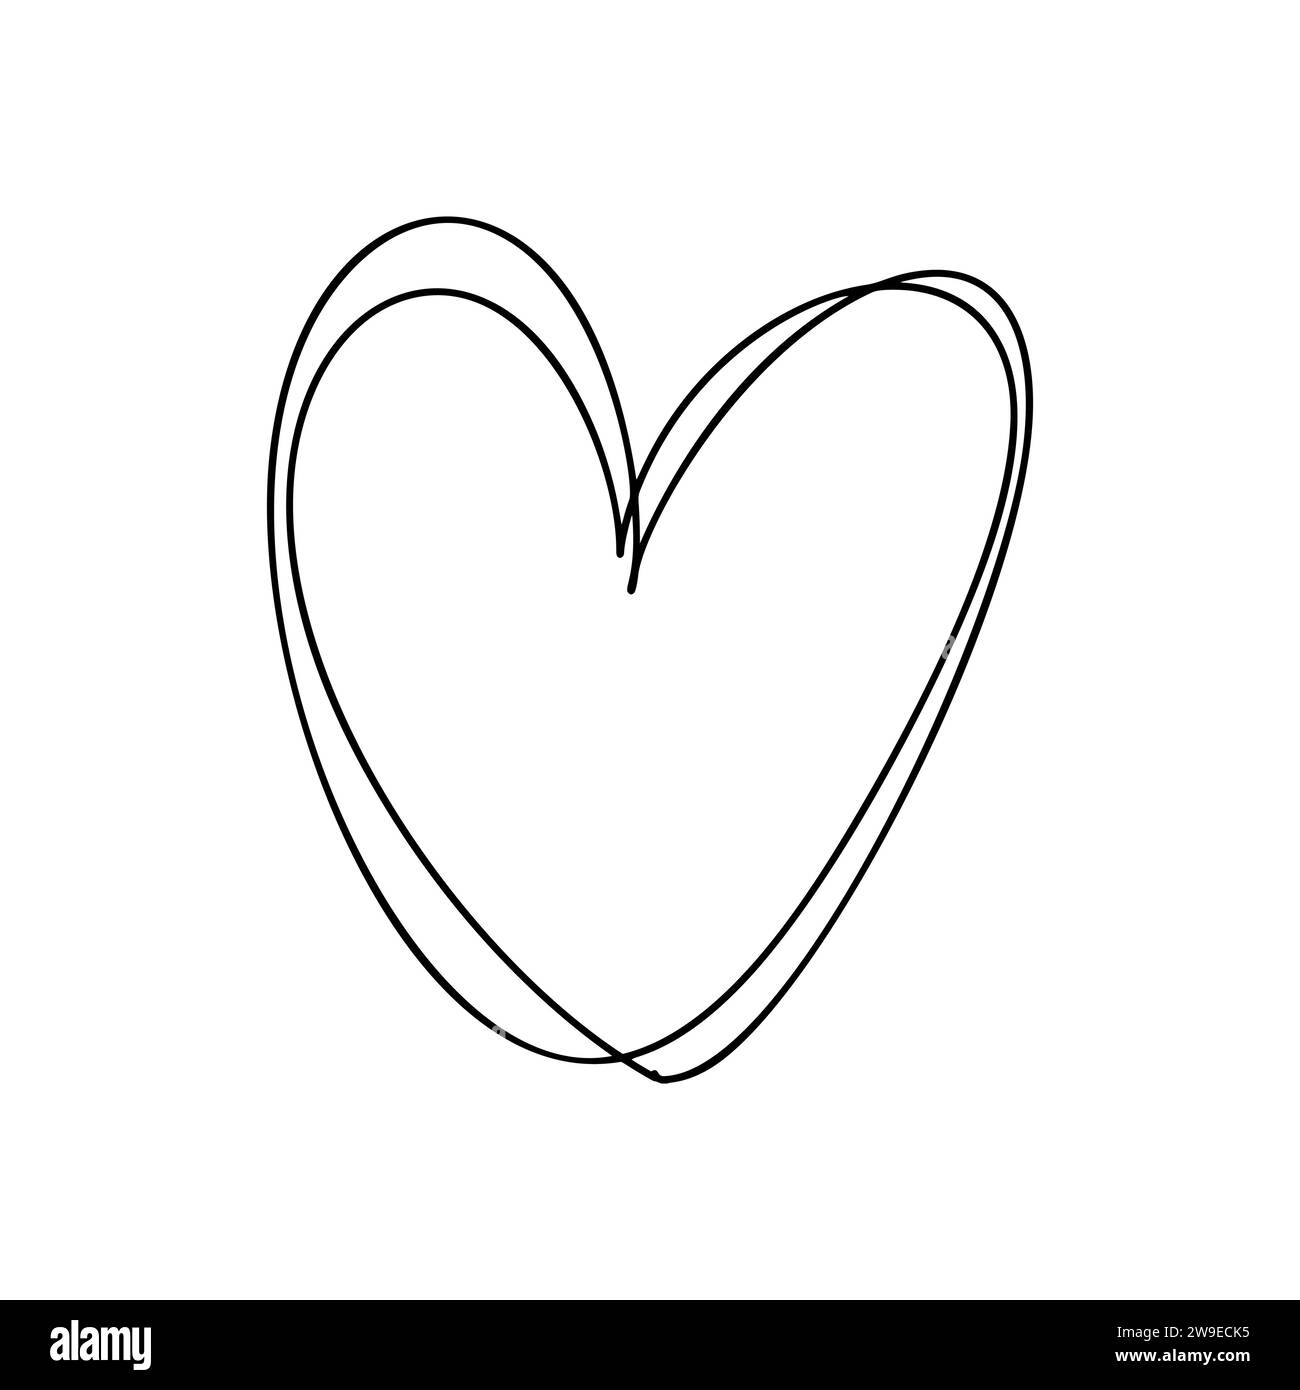 Ama l'illustrazione della linea vettoriale del cuore. Contorno nero. Elemento per banner, poster e biglietti di auguri di San Valentino Illustrazione Vettoriale